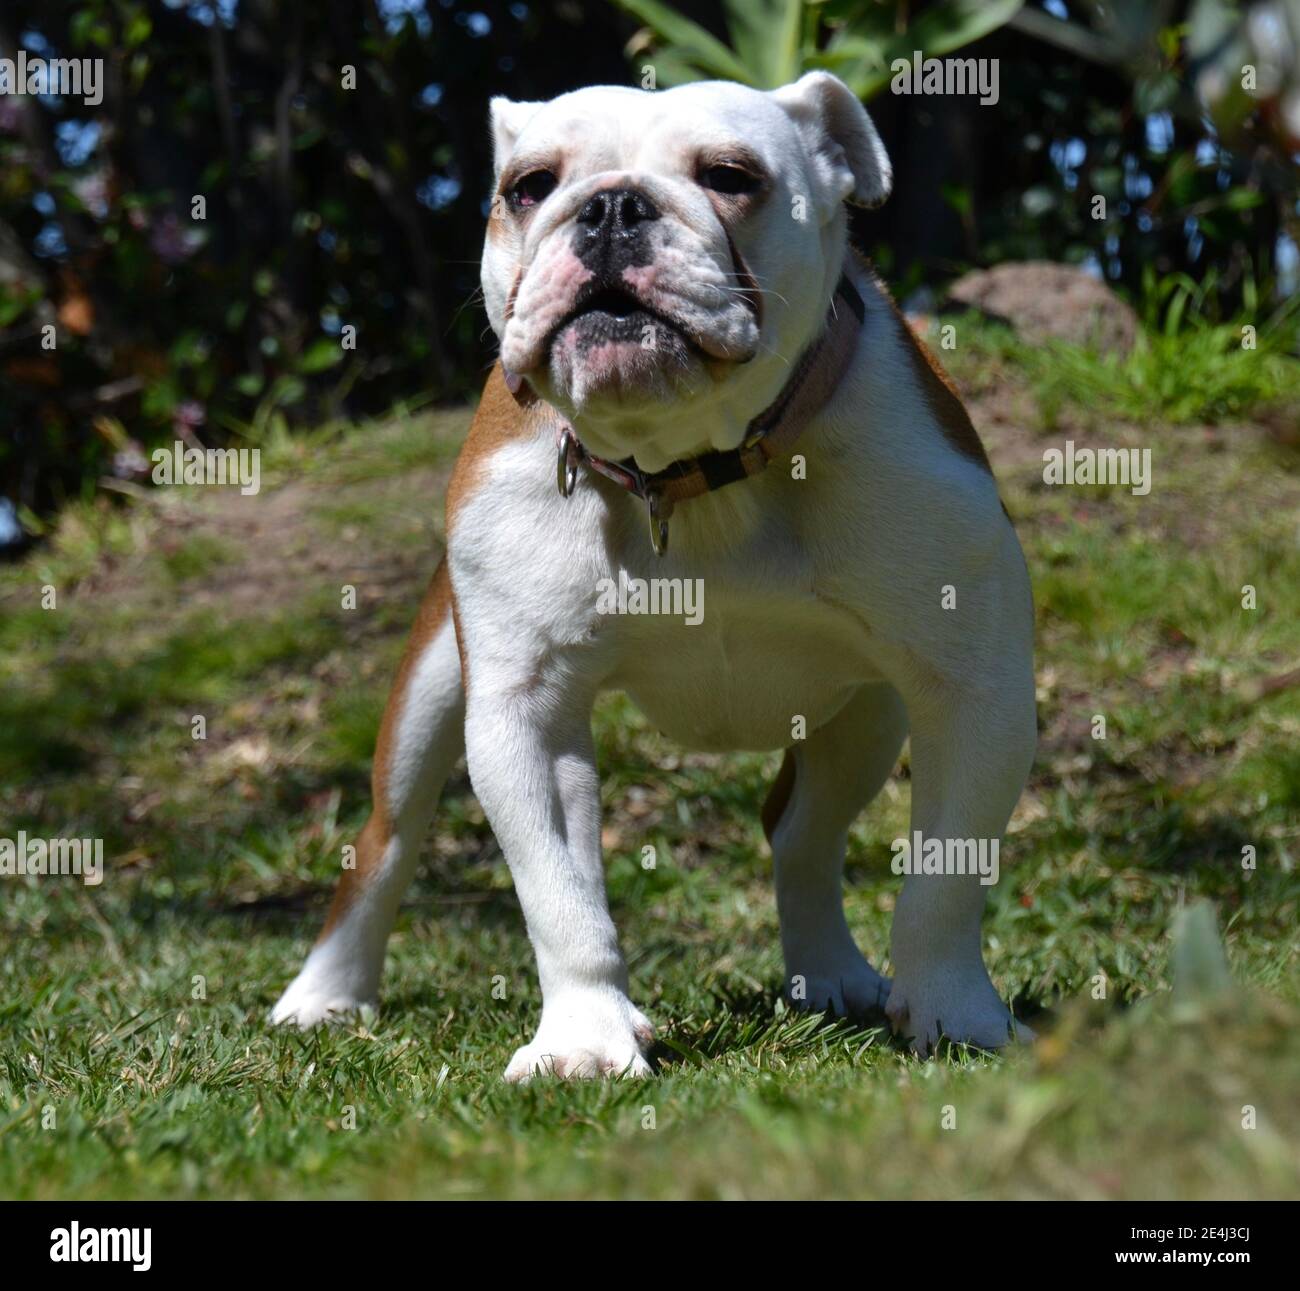 Giovane cucciolo di bulldog inglese o inglese bianco e marrone in piedi in posizione aggressiva in un giardino che sta per abbaiare Foto Stock